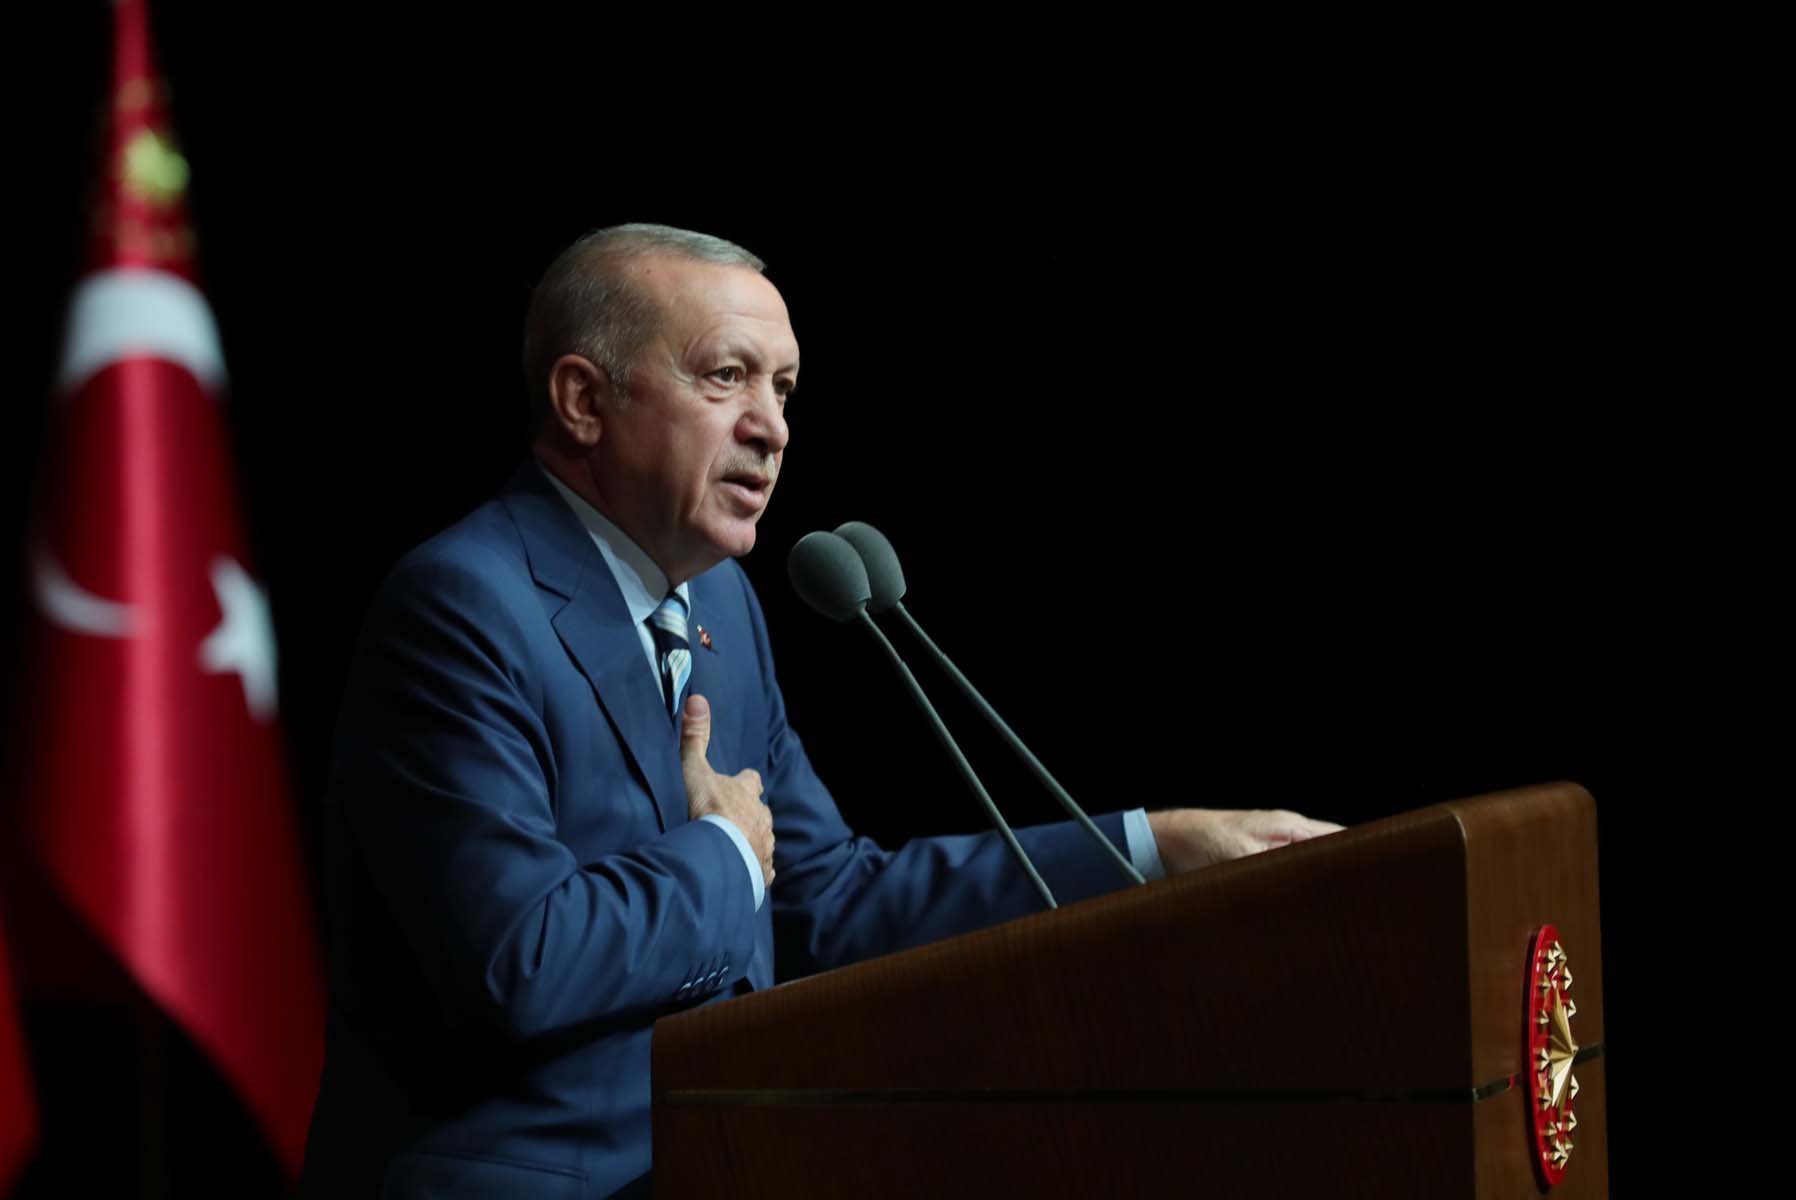  Zor olan seçtik, diyen Cumhurbaşkanı Erdoğan, yeni ekonomi politikasını anlattı: 4-5 aya toparlanacağız, 6 ay sonra ise meyvelerini yiyeceğiz